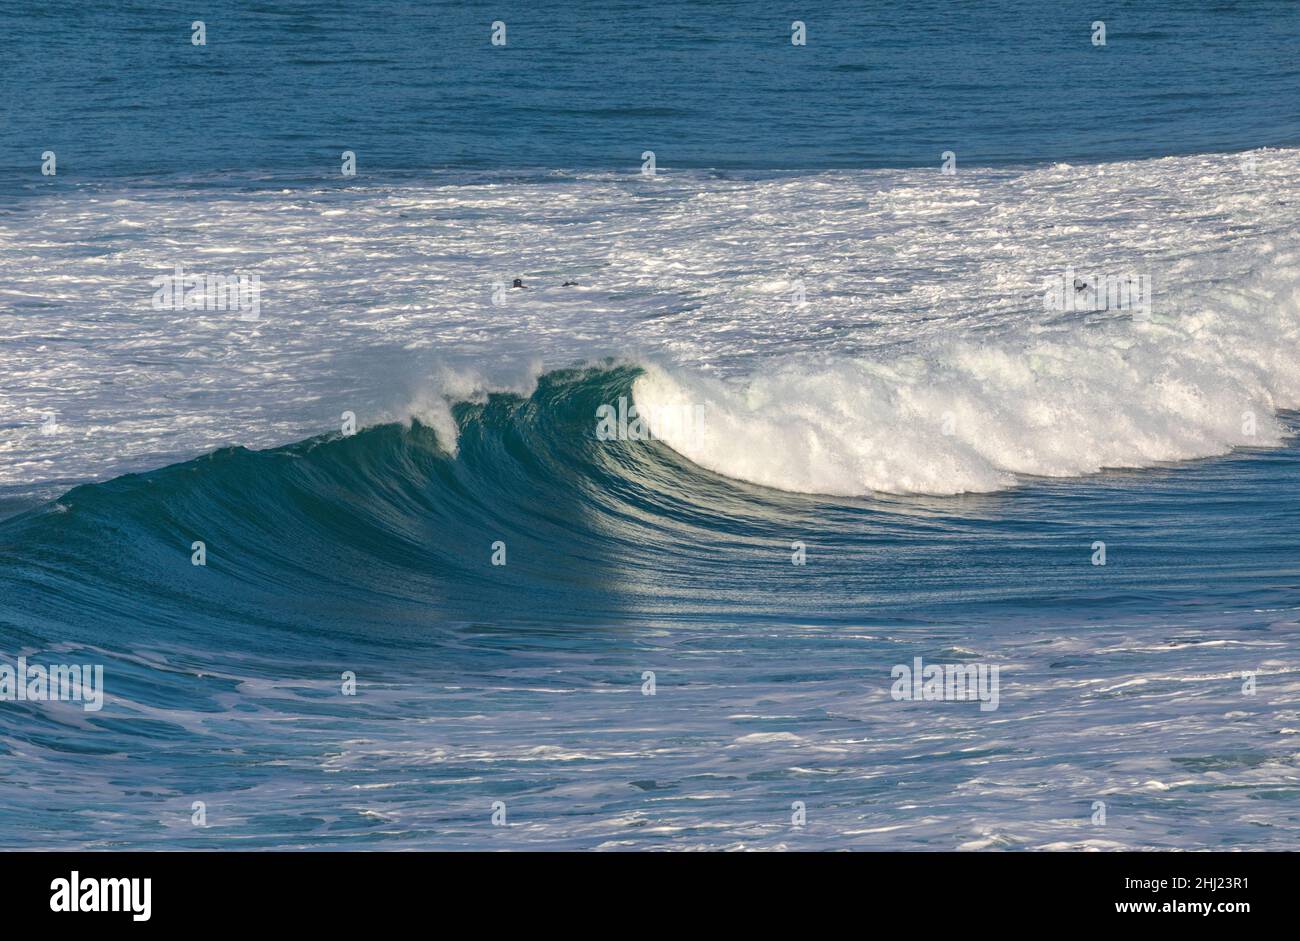 Big waves off the shore at Holywell Bay North Cornwall Stock Photo